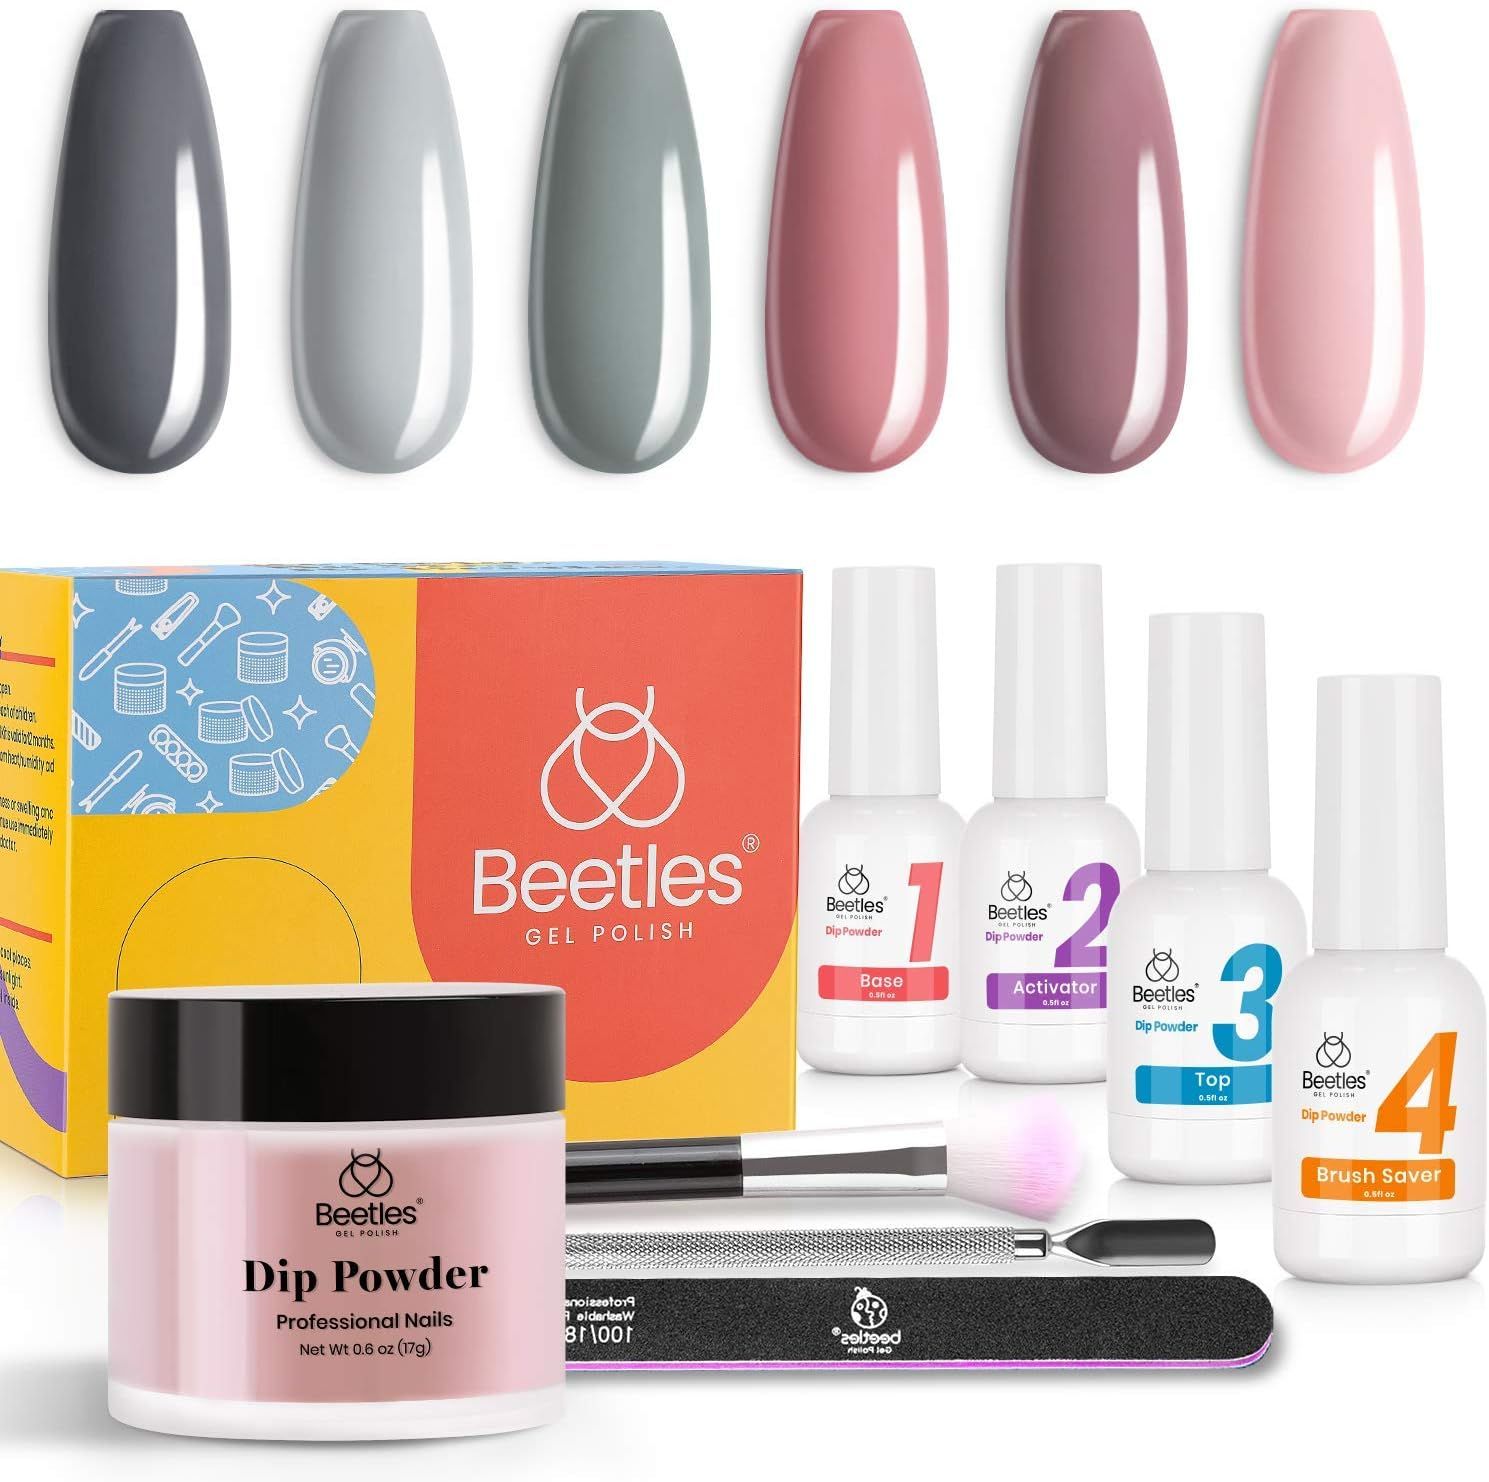 Beetles Bridesmaid Beauty Classic Dip Powder Nail Kit Starter - Nude Gray Pink 6 Colors Nail Dipp... | Amazon (US)